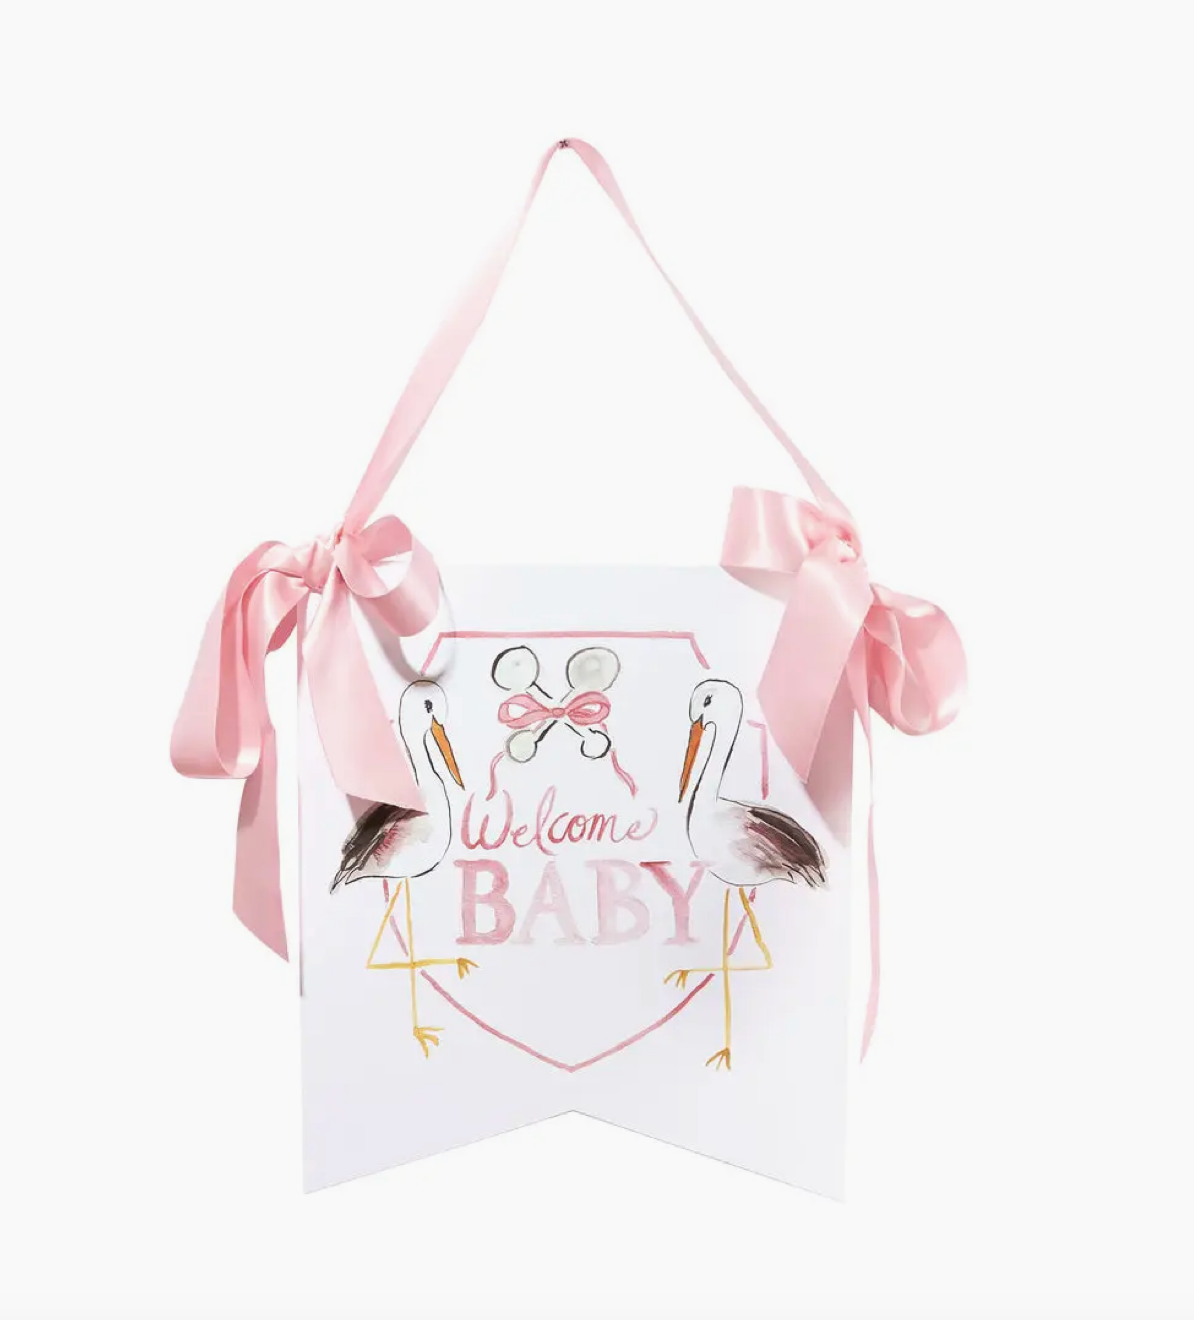 Welcome Baby Stork Hanger